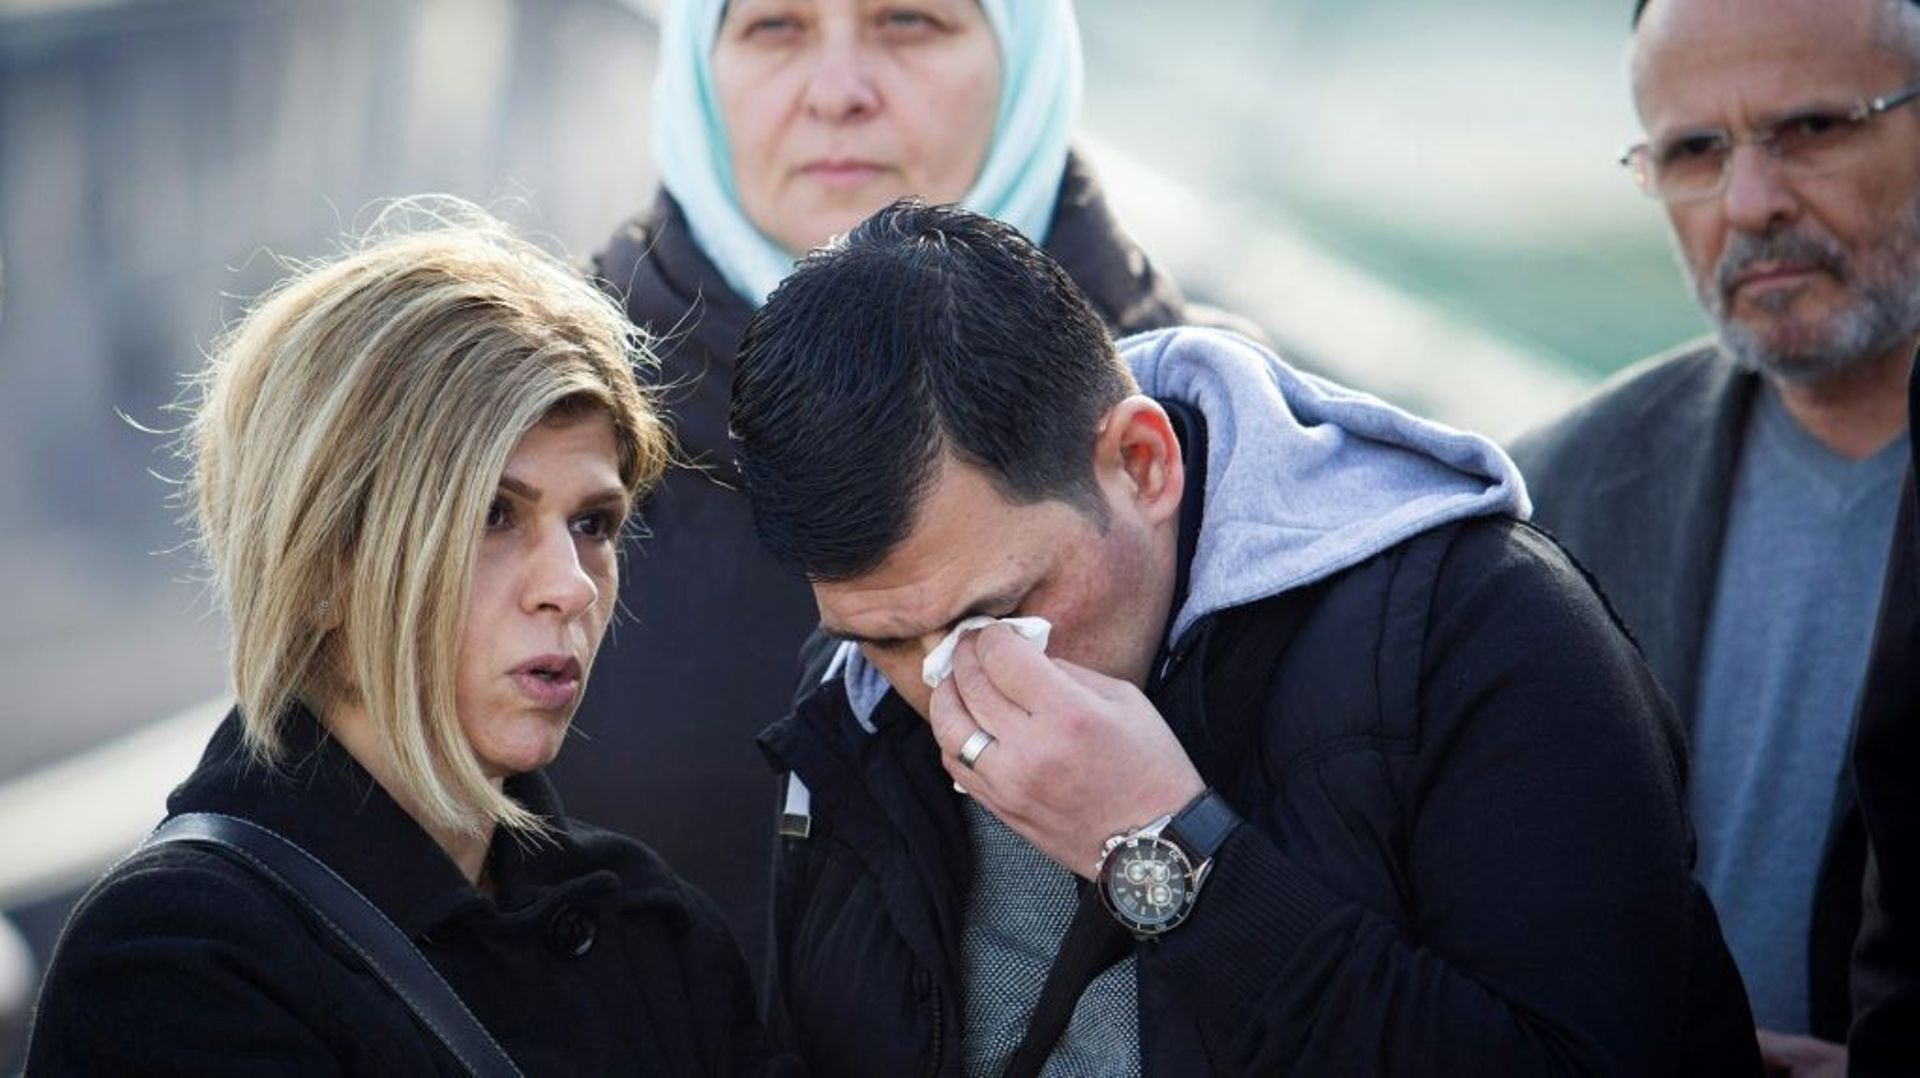 Abdullah Kurdi, le père du petit Aylan, le garçon syrien retrouvé noyé sur une plage de Turquie en 2015, assiste au baptème d'un navire humanitaire allemand rebaptisé du nom de son fils le 10 février 2019 à Palma de Majorque  

et sa tante Tima Kurdi ont 